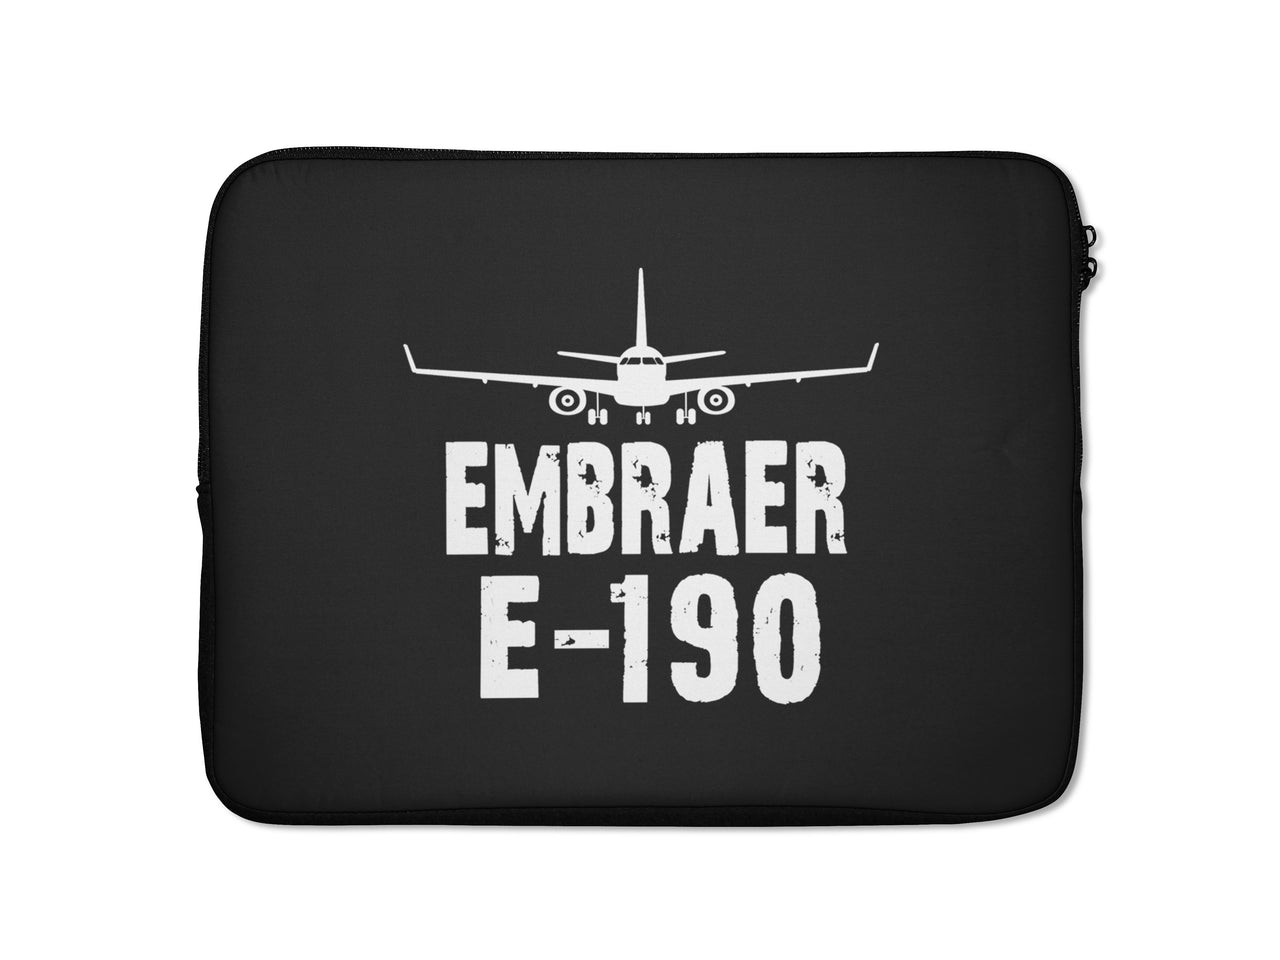 Embraer E-190 & Plane Designed Laptop & Tablet Cases